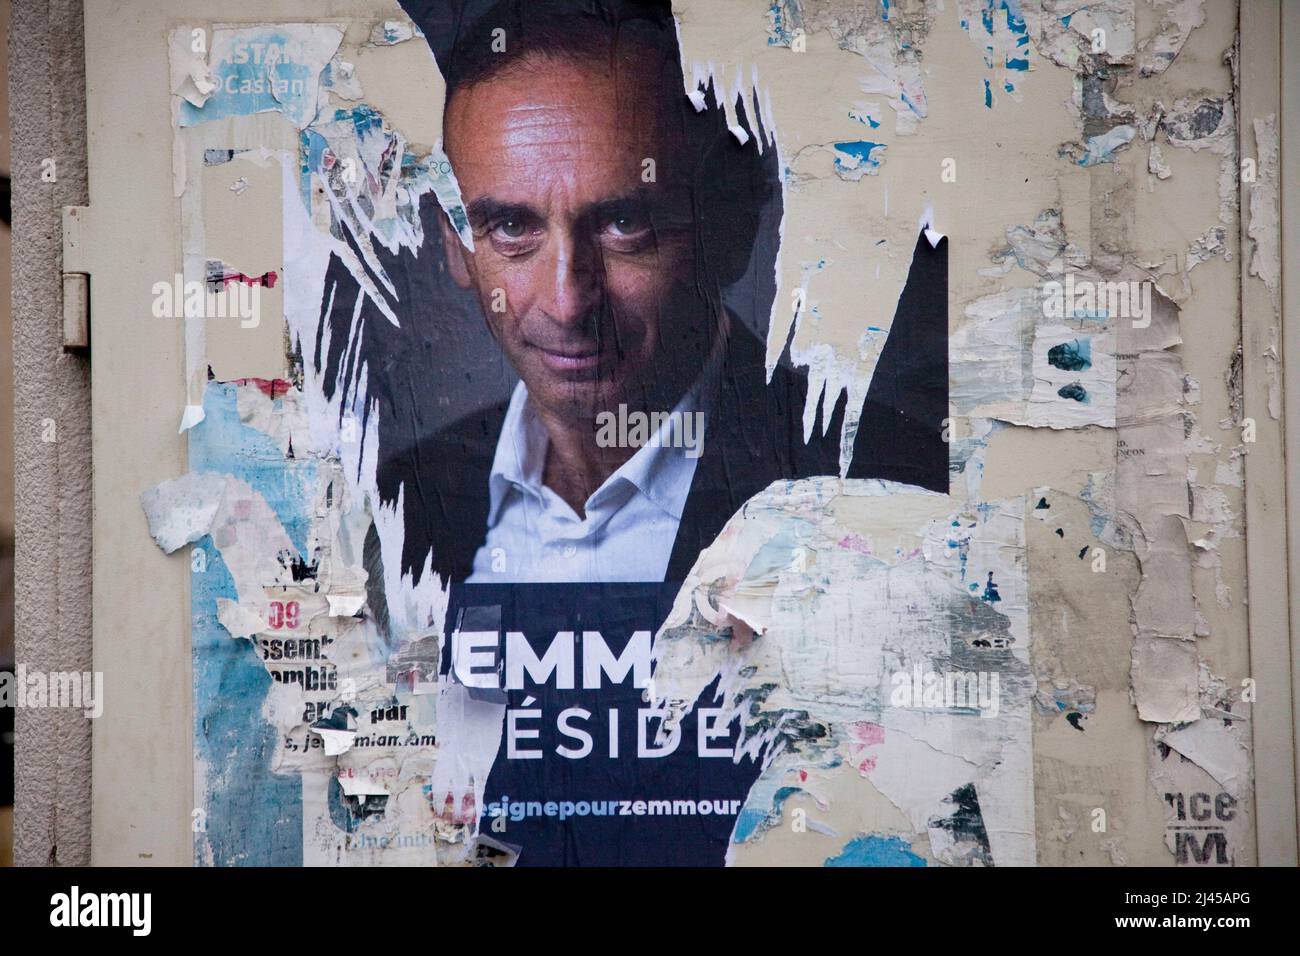 Briançon (Alpes françaises, sud-est de la France), le 4 octobre 2021: Affiche représentant Eric Zemmour sur un mur, avec slogan ÒZemmour PresidentÓ. Po déchirée Banque D'Images